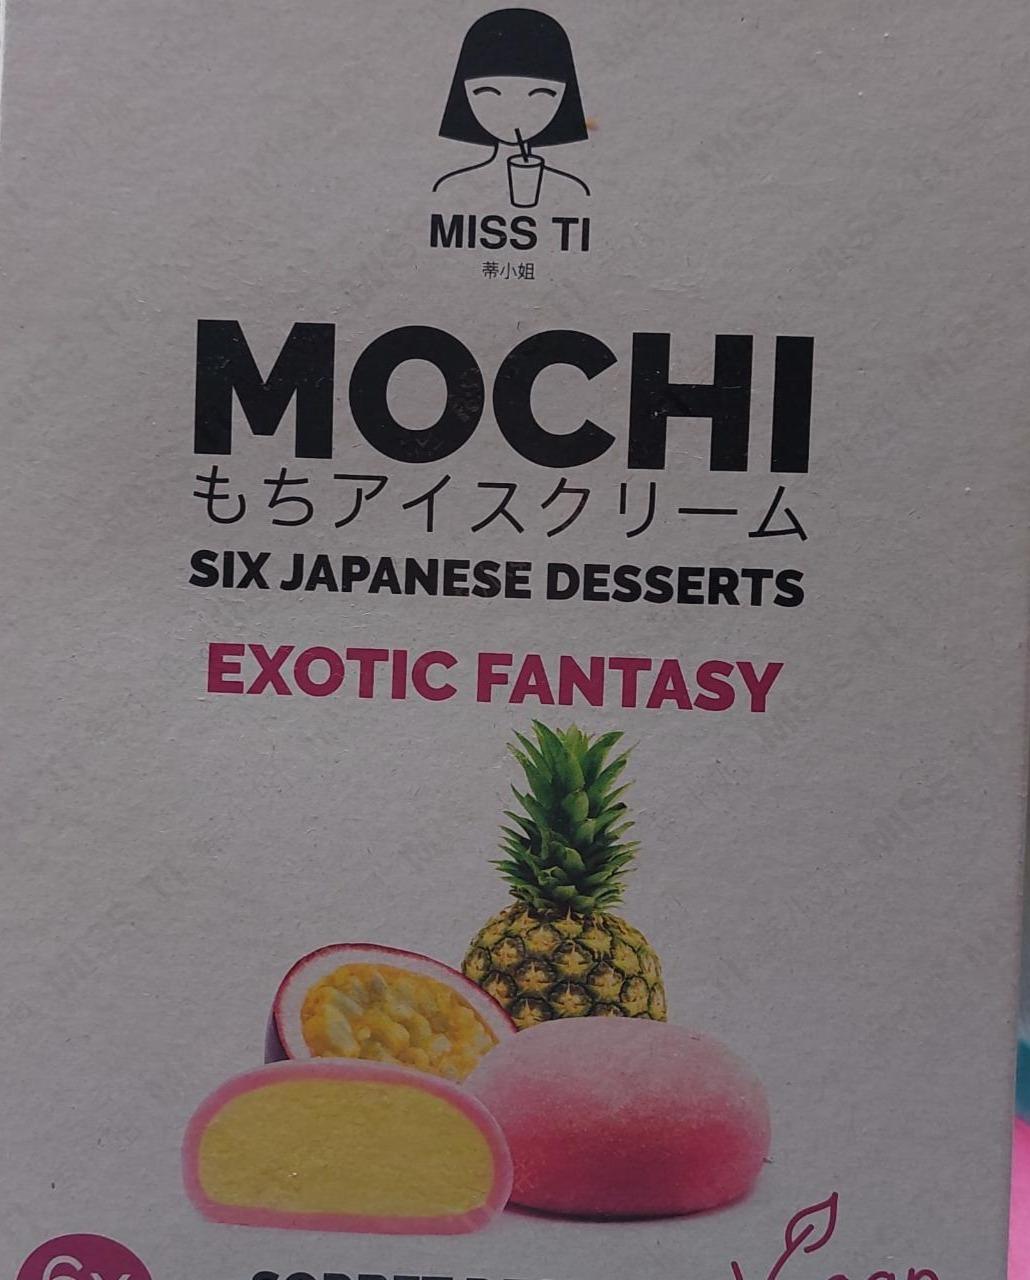 Фото - Six japanese desserts Exotic fantasy Mochi Miss ti